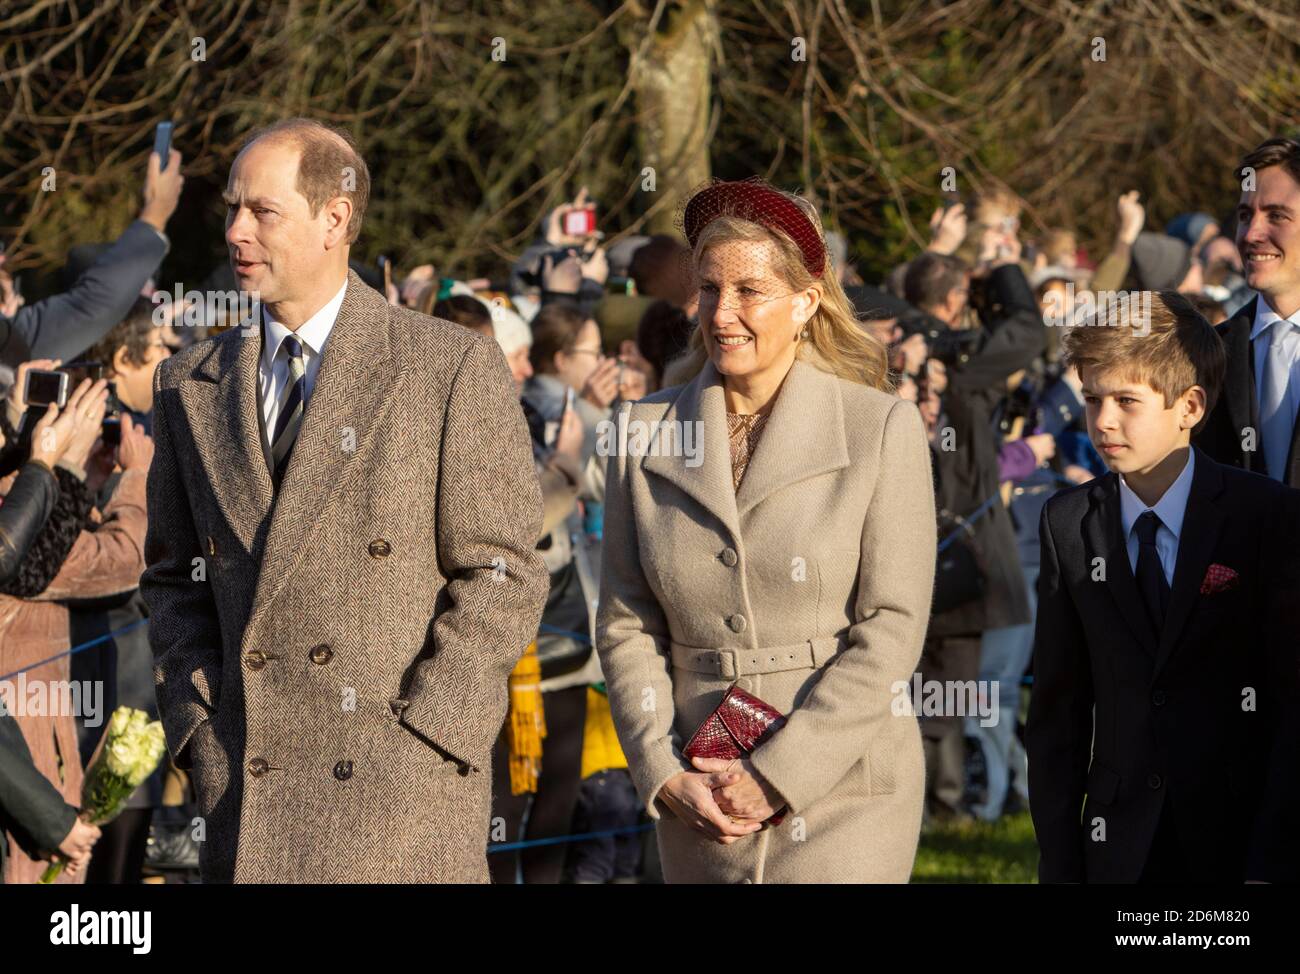 Prinz Edward Earl of Wessex mit Sophie Gräfin von Wessex, Lady Louise Windsor und James Viscount Severn am Weihnachtstag 2019 in Sandringham. Stockfoto